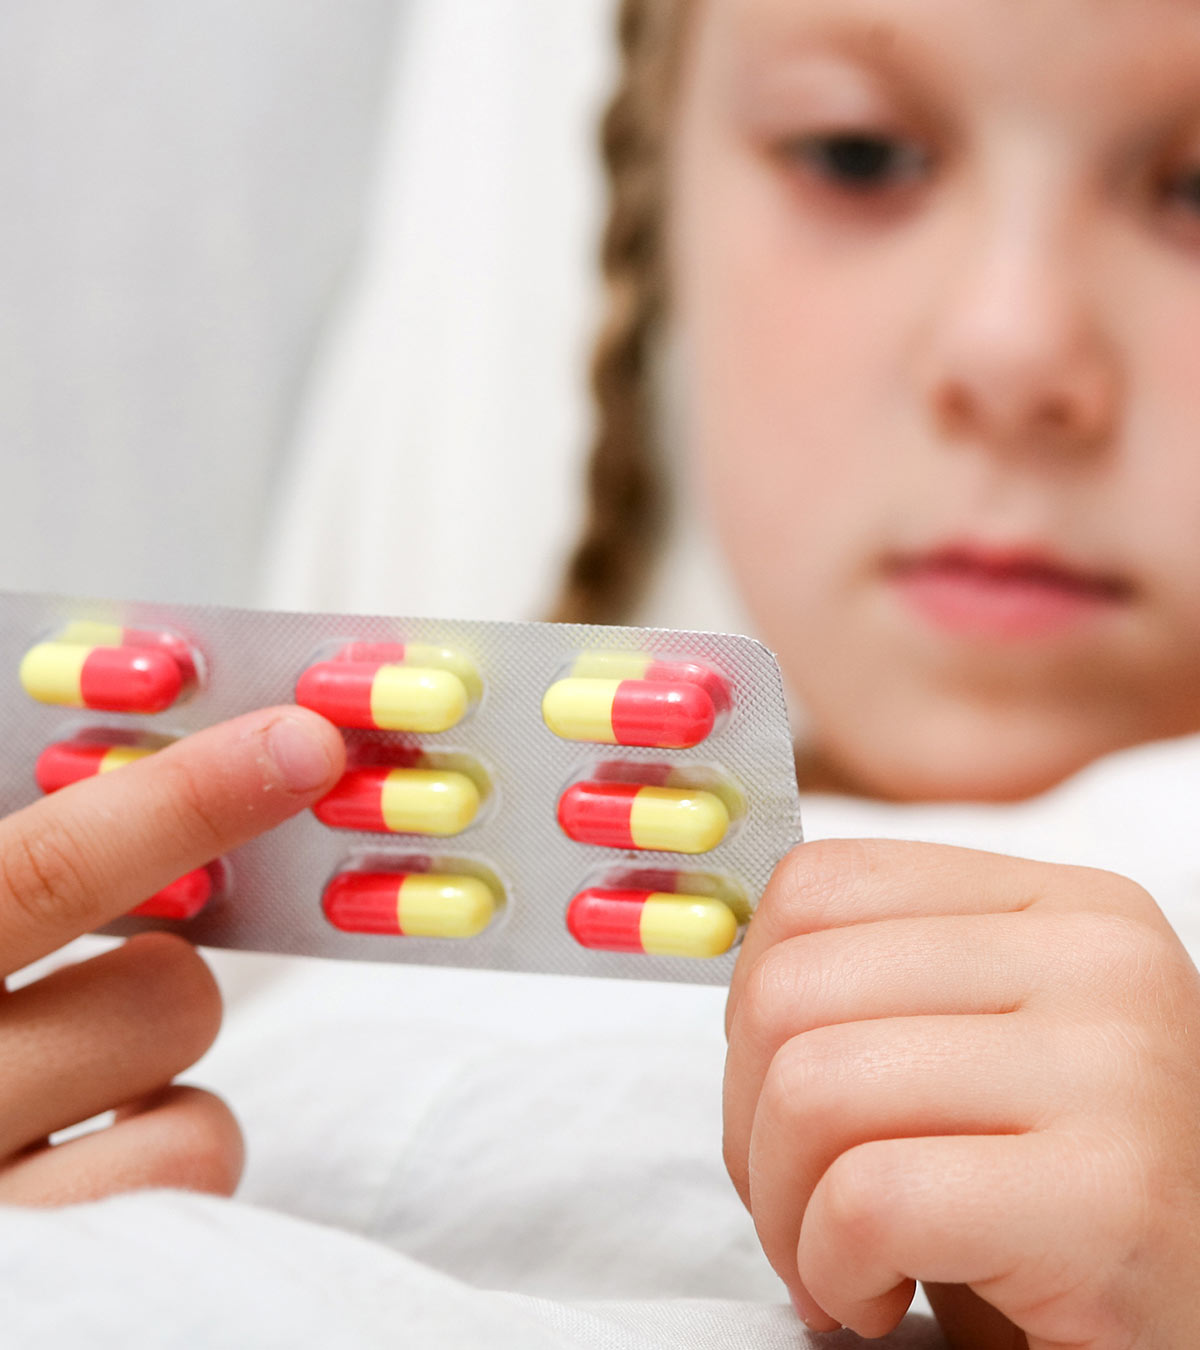 儿童阿莫西林剂量:安全、使用和注意事项